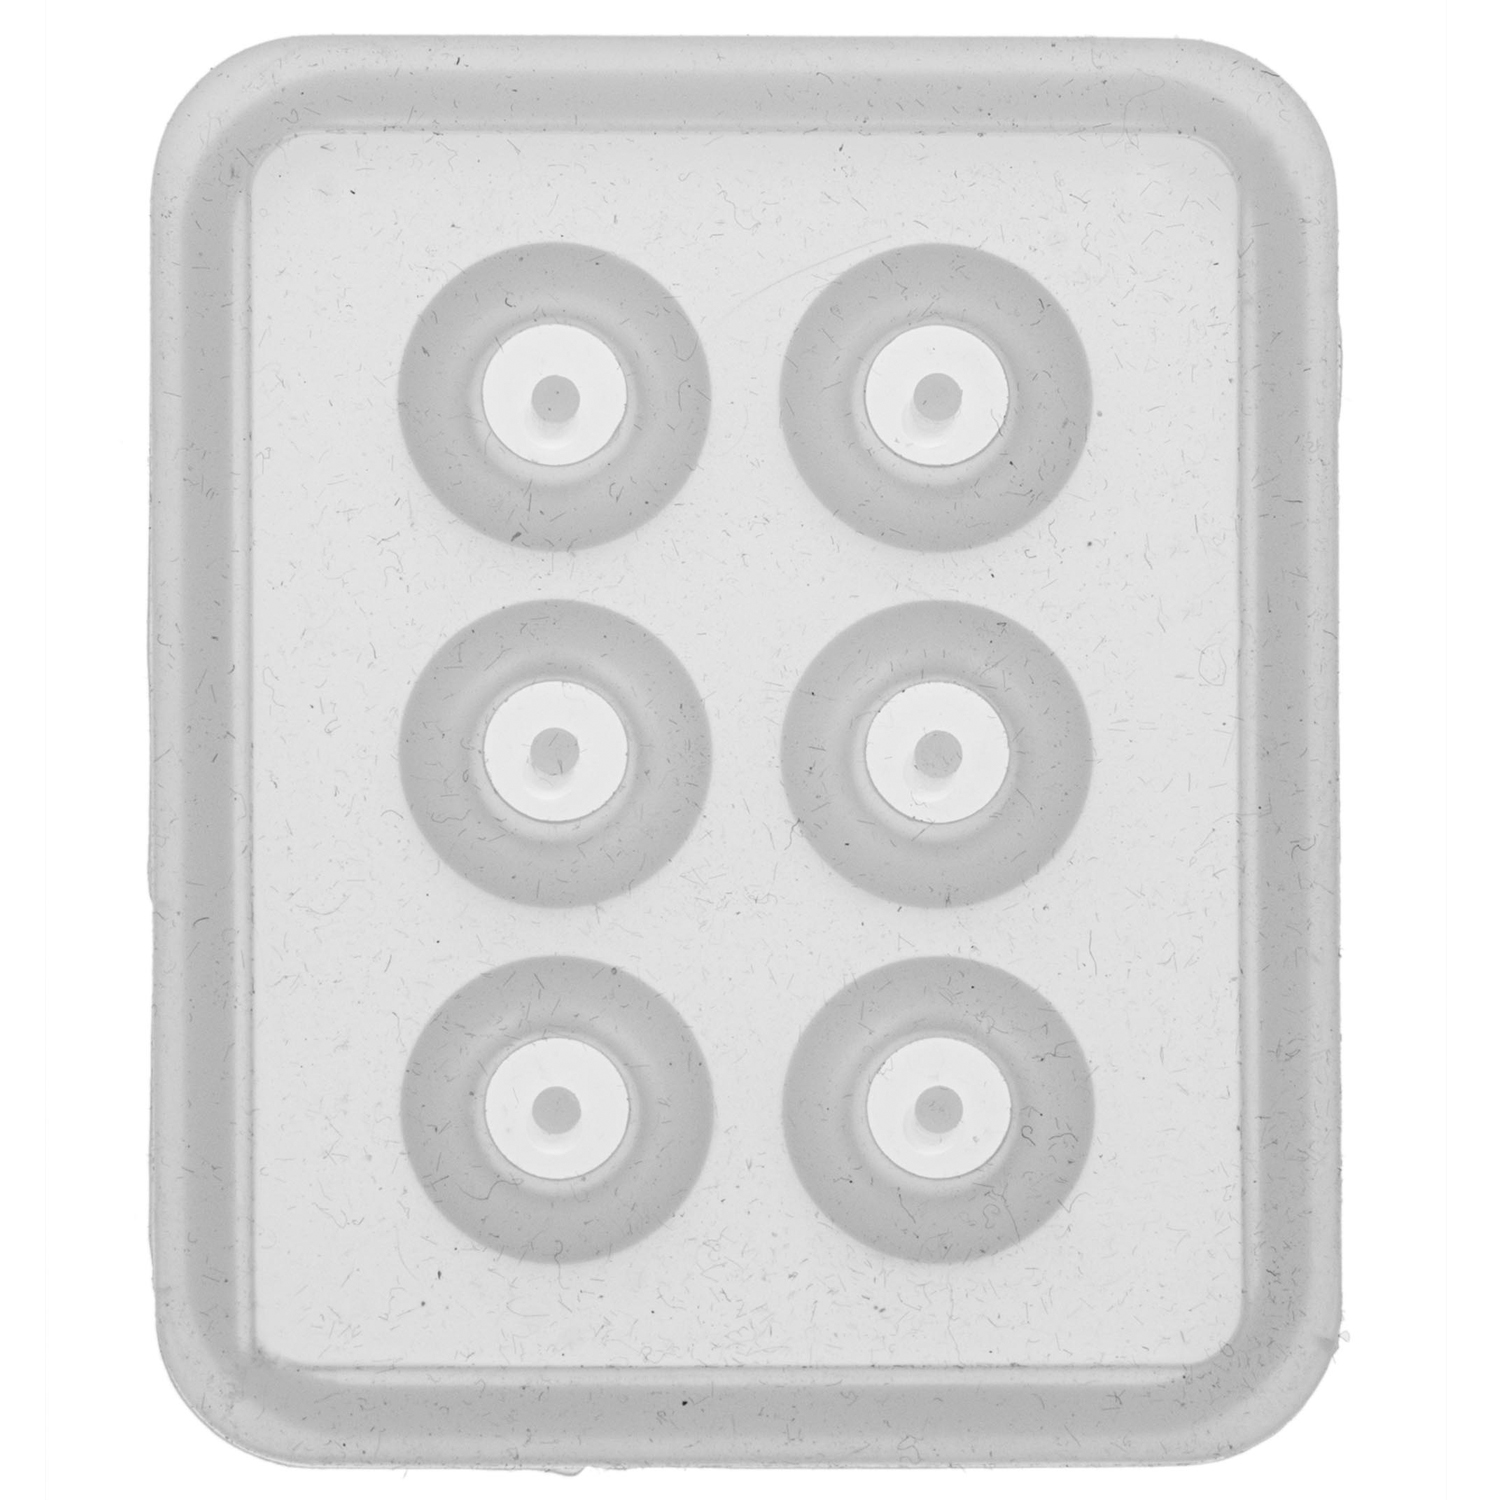 NEU Qualitts-Gieform aus Silikon / Silikongieform Perle / Kugel mit Loch, 16 mm, 6-teilig